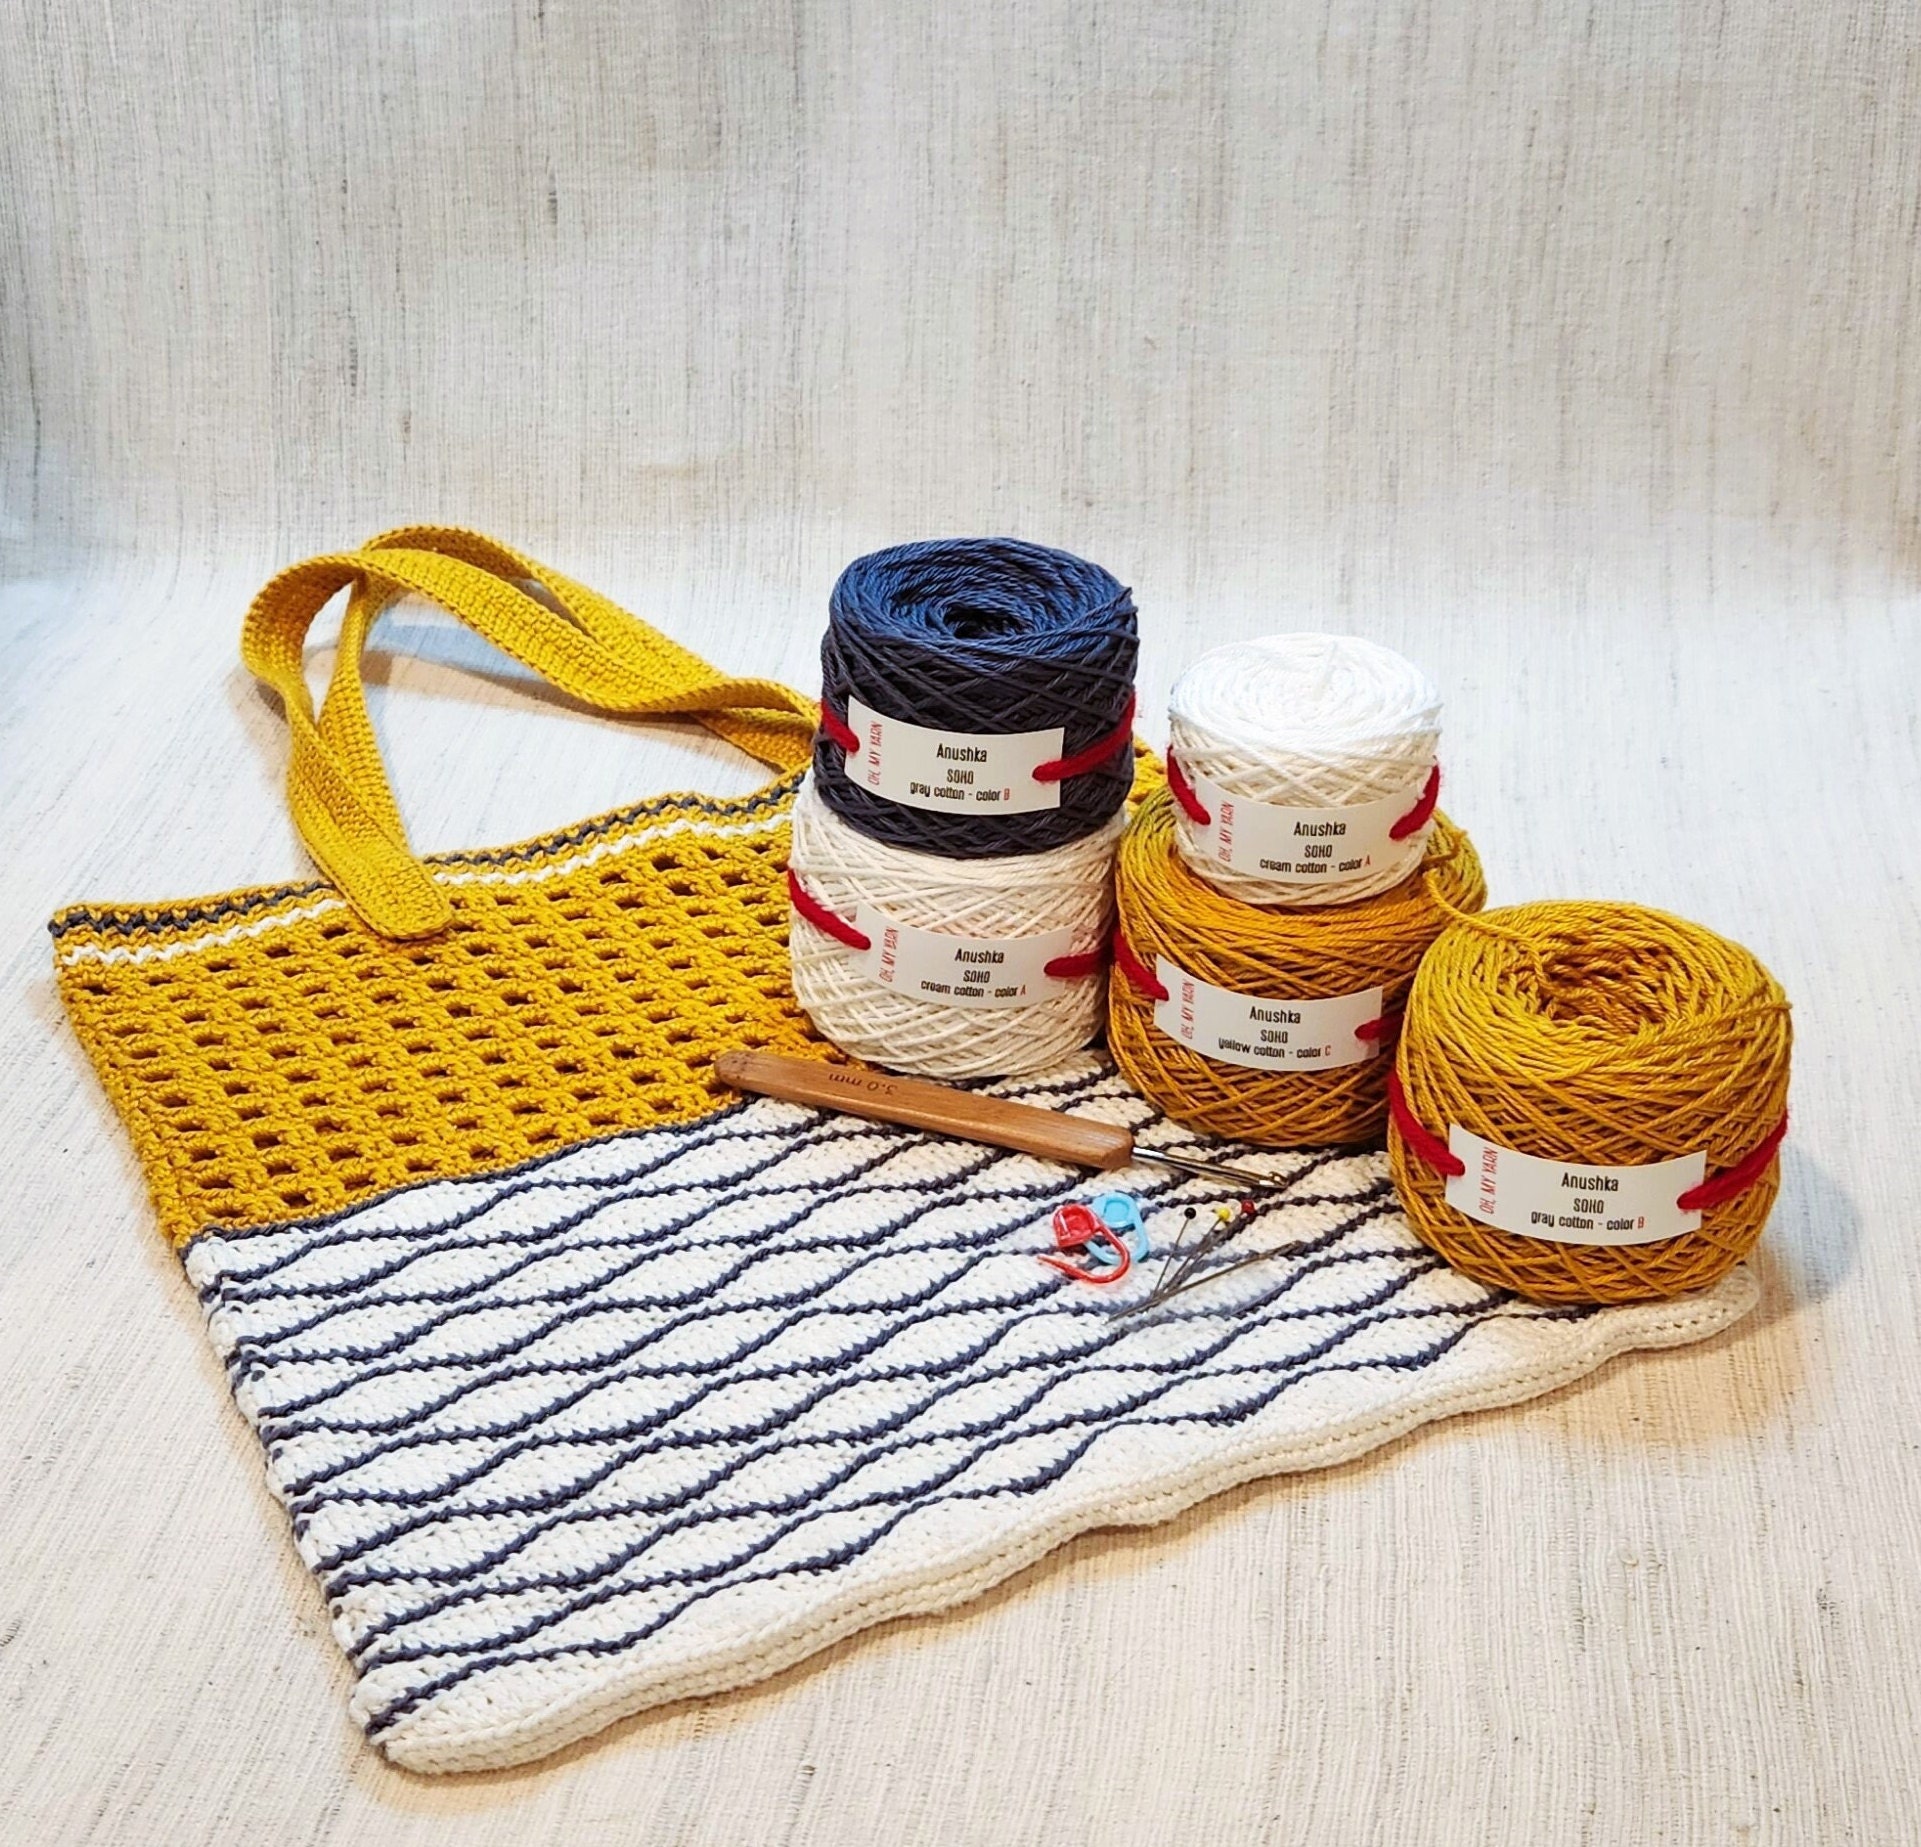 Crochet Starter Kit 73 Piece Crochet Kit FREE SHIPPING Kit